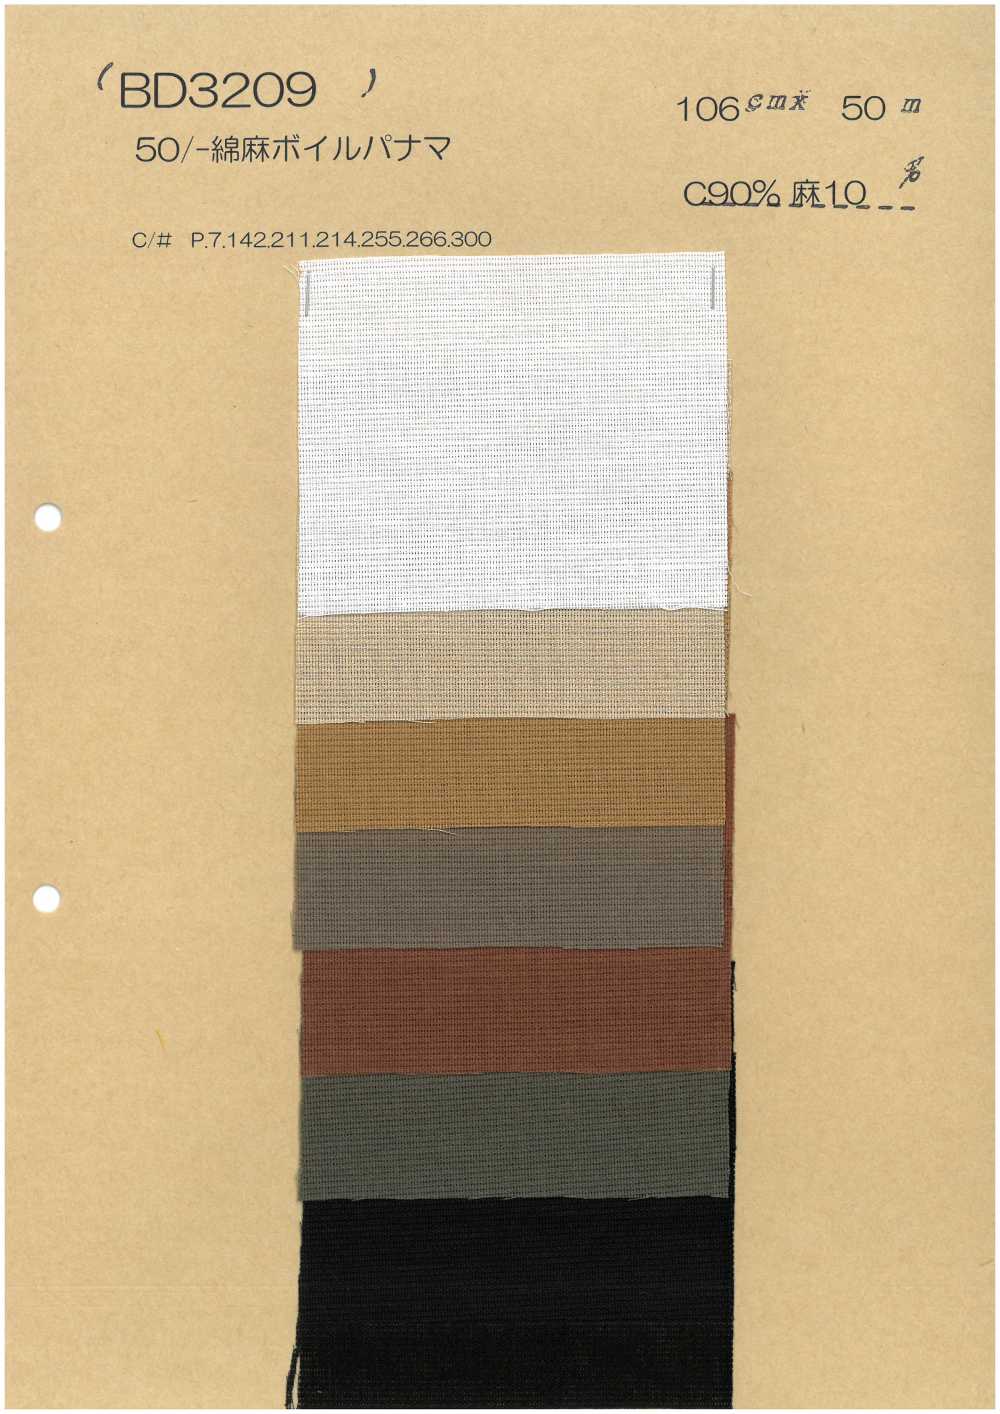 BD3209 [OUTLET] Algodão Linen Panamaboiru[Têxtil / Tecido] COSMO TEXTILE